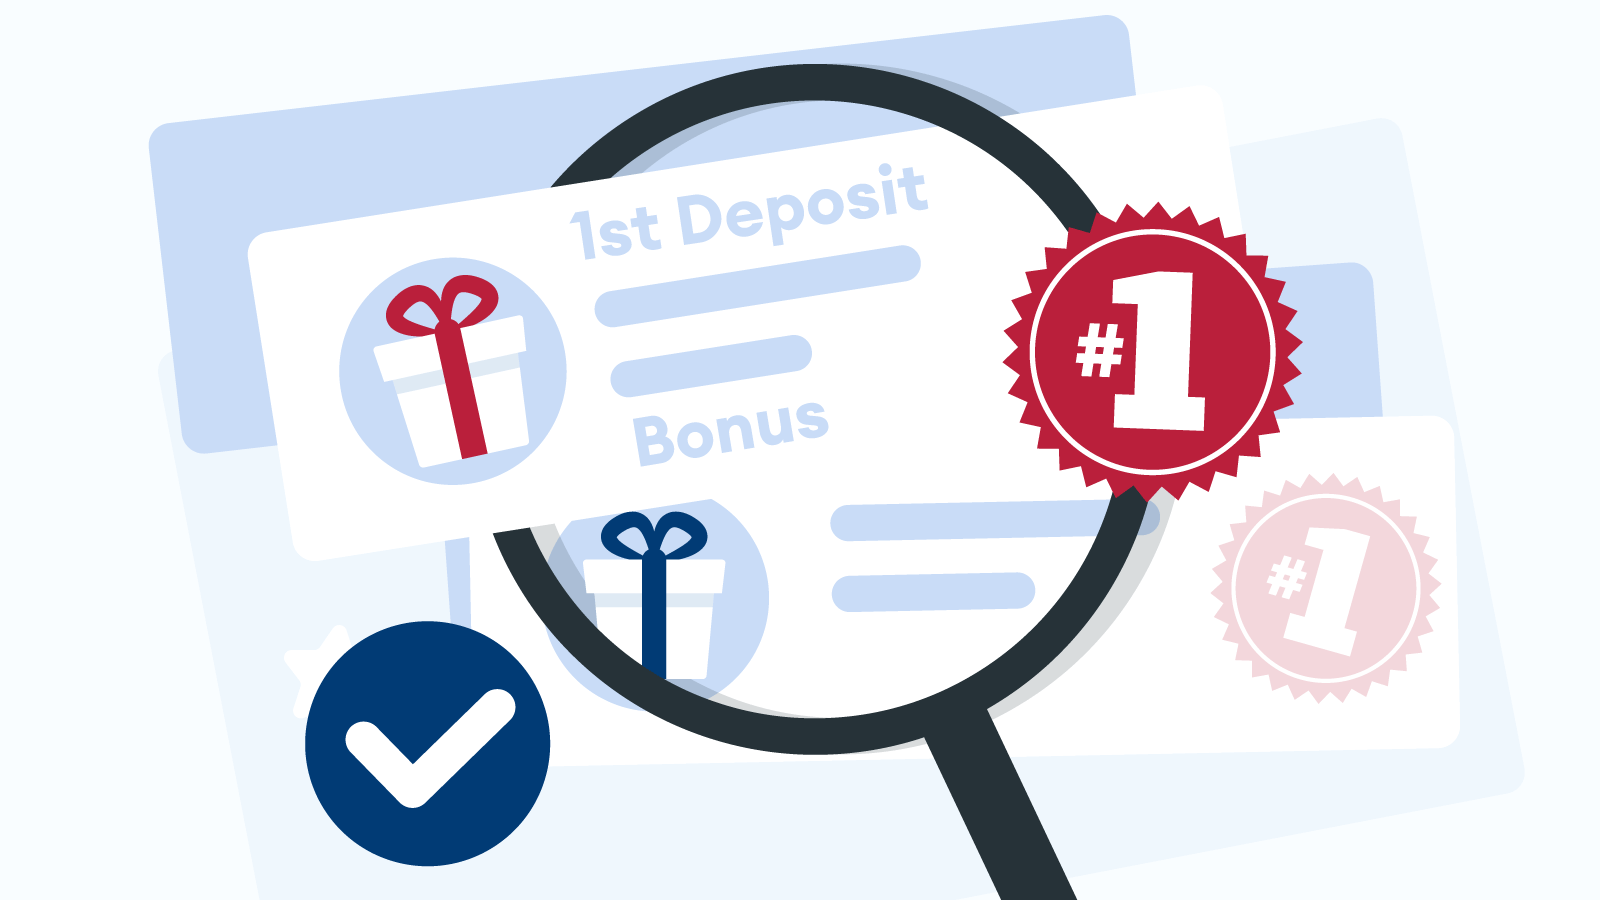 How to Choose Your 1st Deposit Casino Bonus